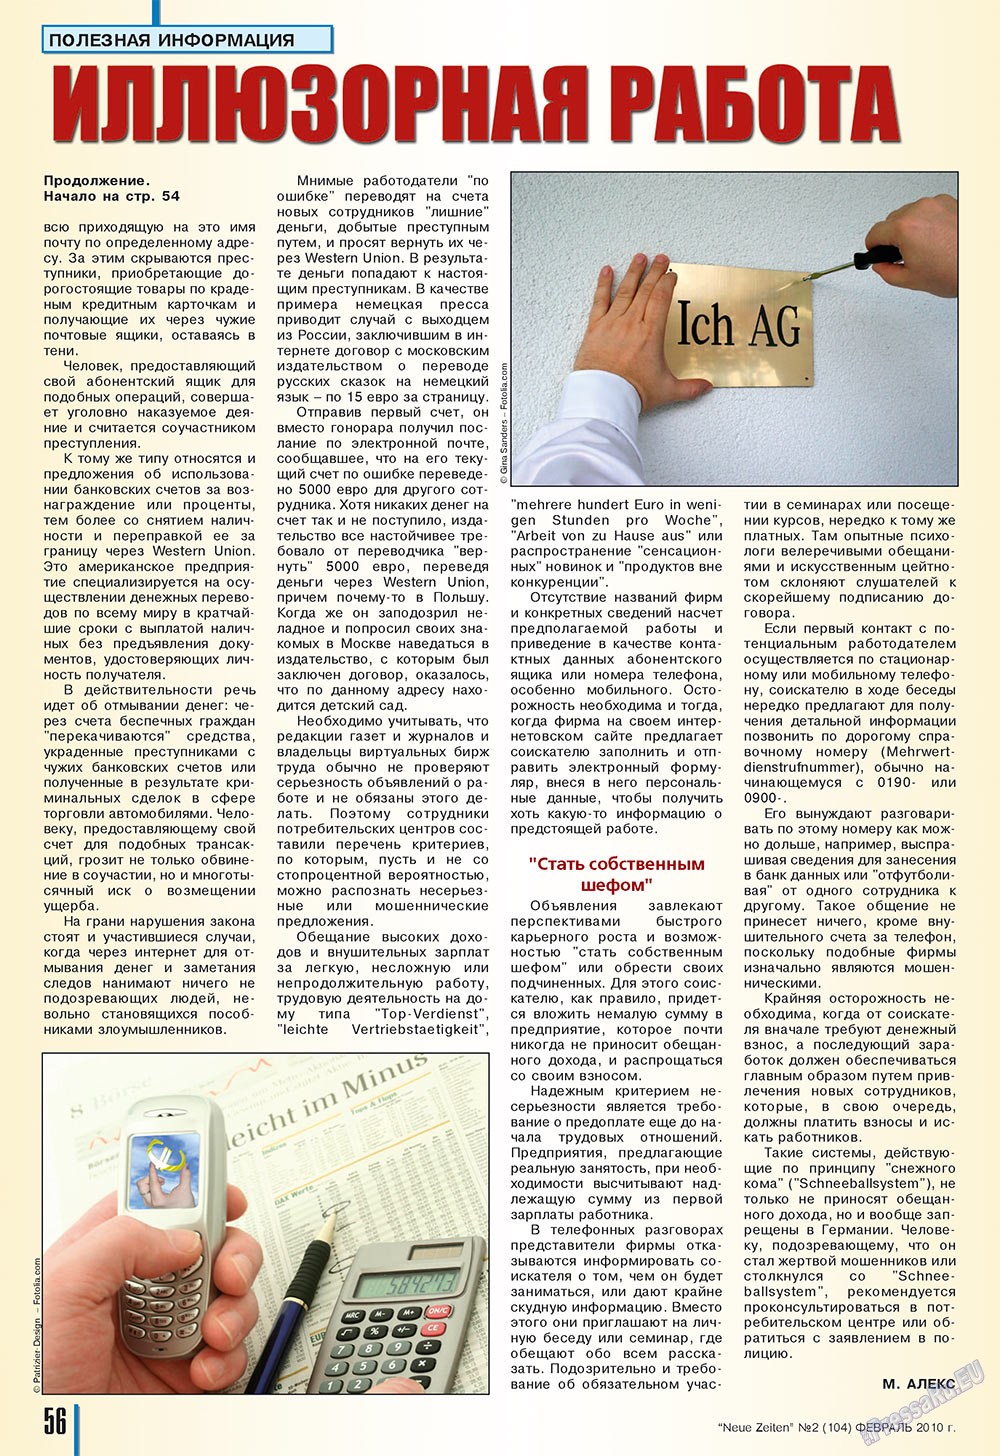 Neue Zeiten, журнал. 2010 №2 стр.56